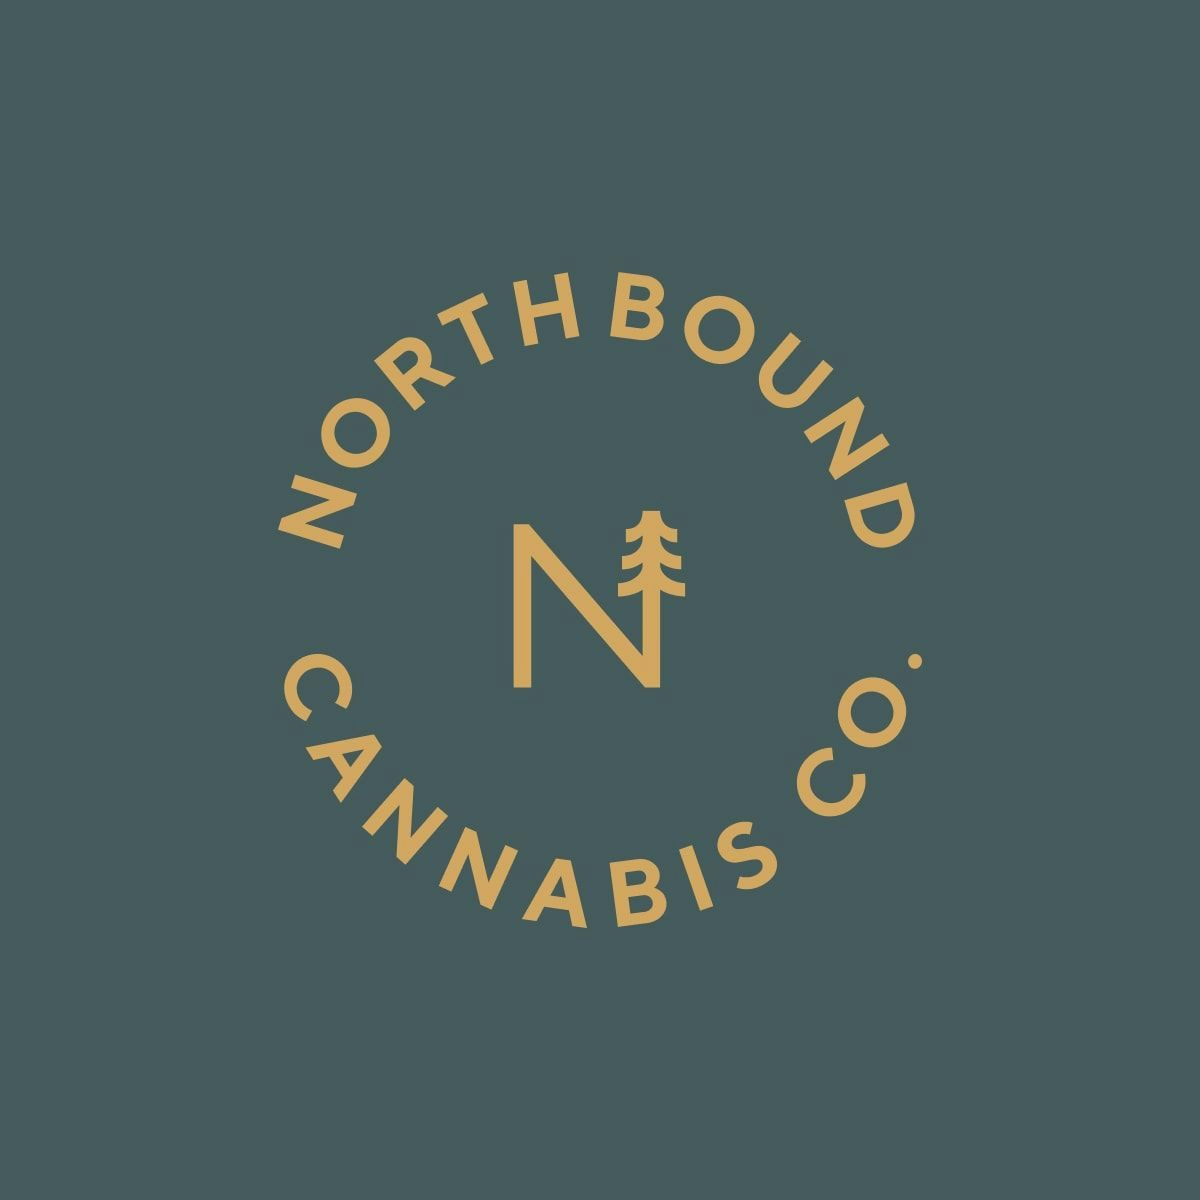 Northbound Cannabis Co. branding